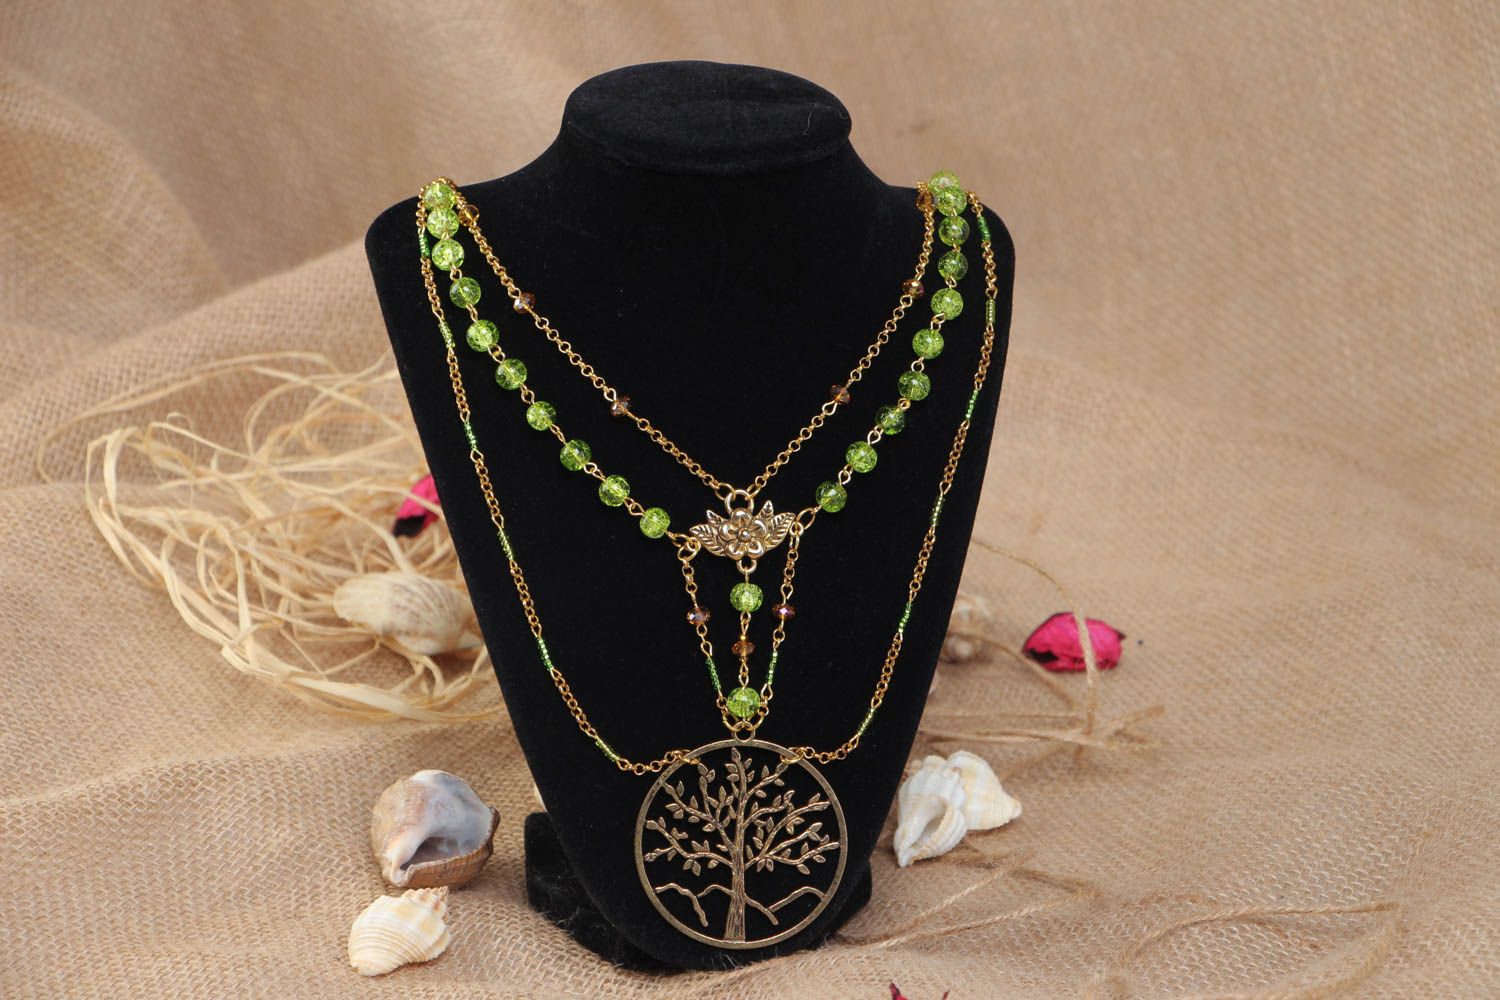 Long collier en perles de verre vertes et chaînette fait main Arbre de vie photo 1